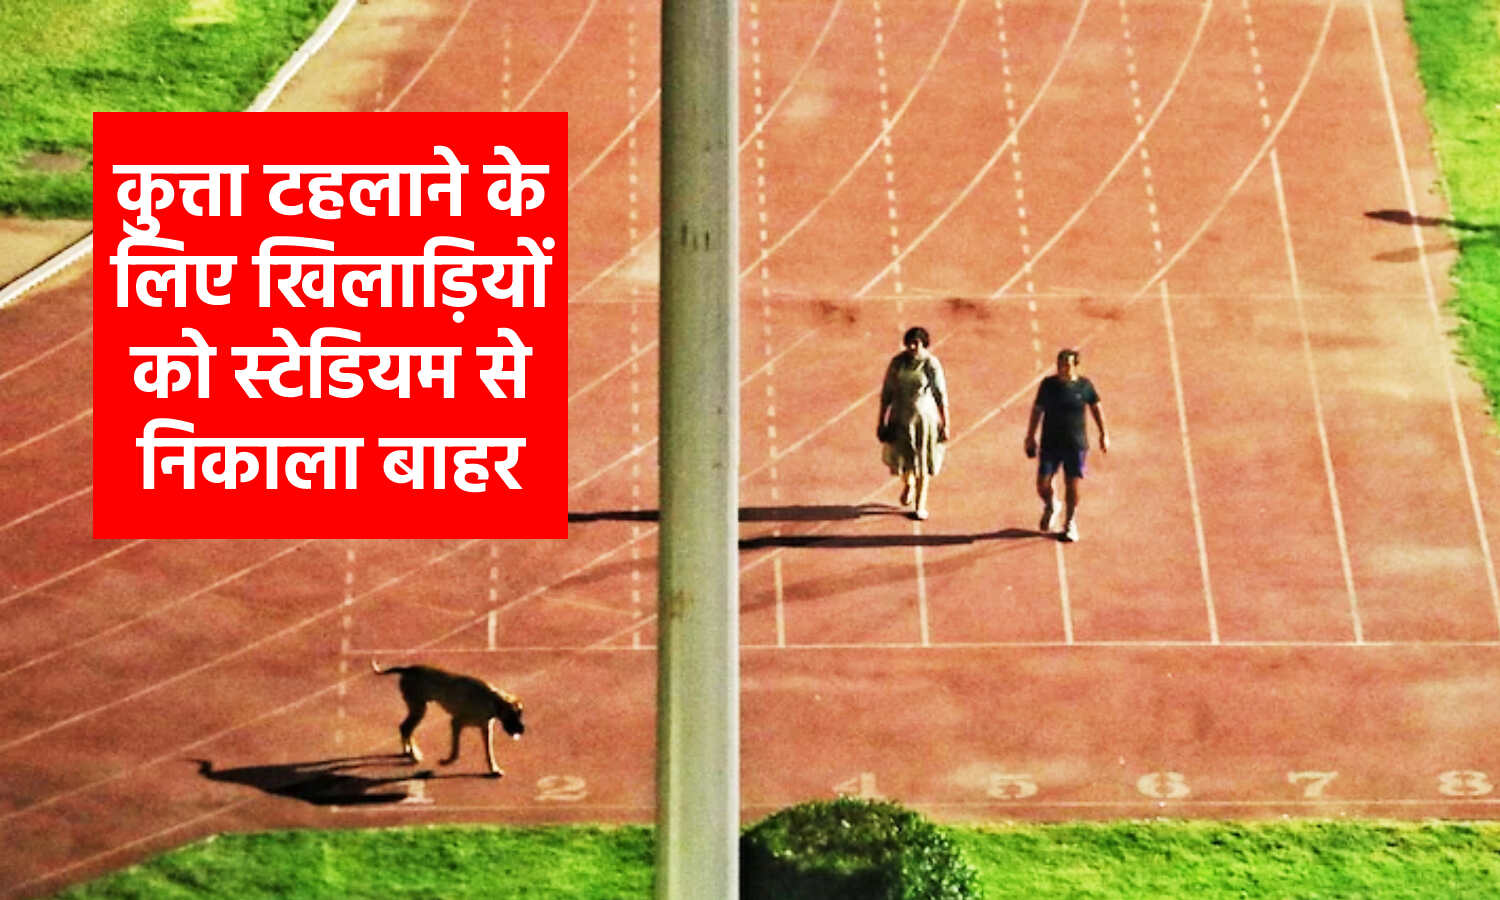 Delhi News : कुत्ता लेकर टहल सकें IAS अधिकारी, इसलिए एथलीट्स से खाली करा लिया गया था त्यागराज स्टेडियम